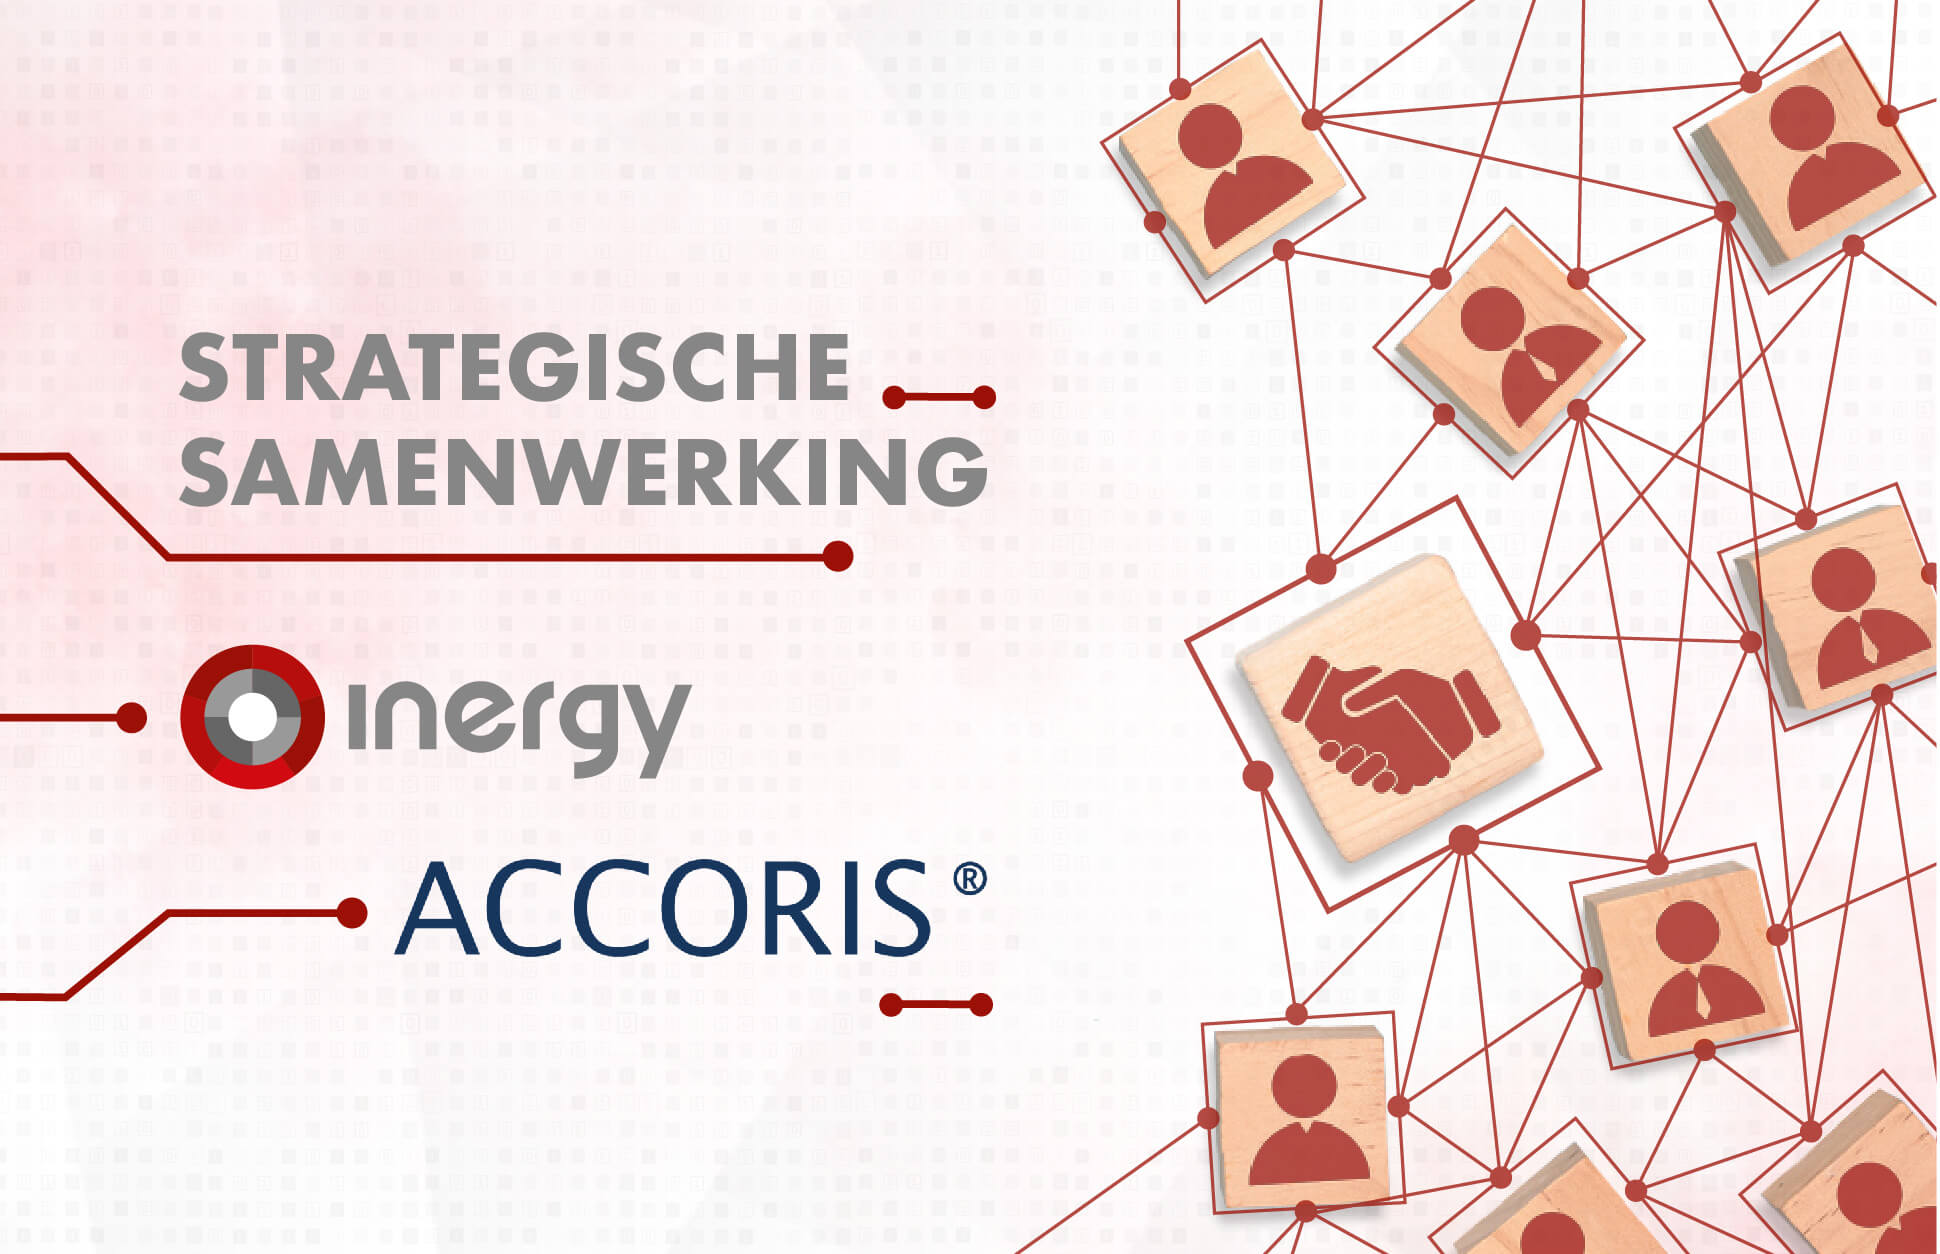 Inergy en Accoris kondigen strategische samenwerking aan voor verbeterde auditdiensten